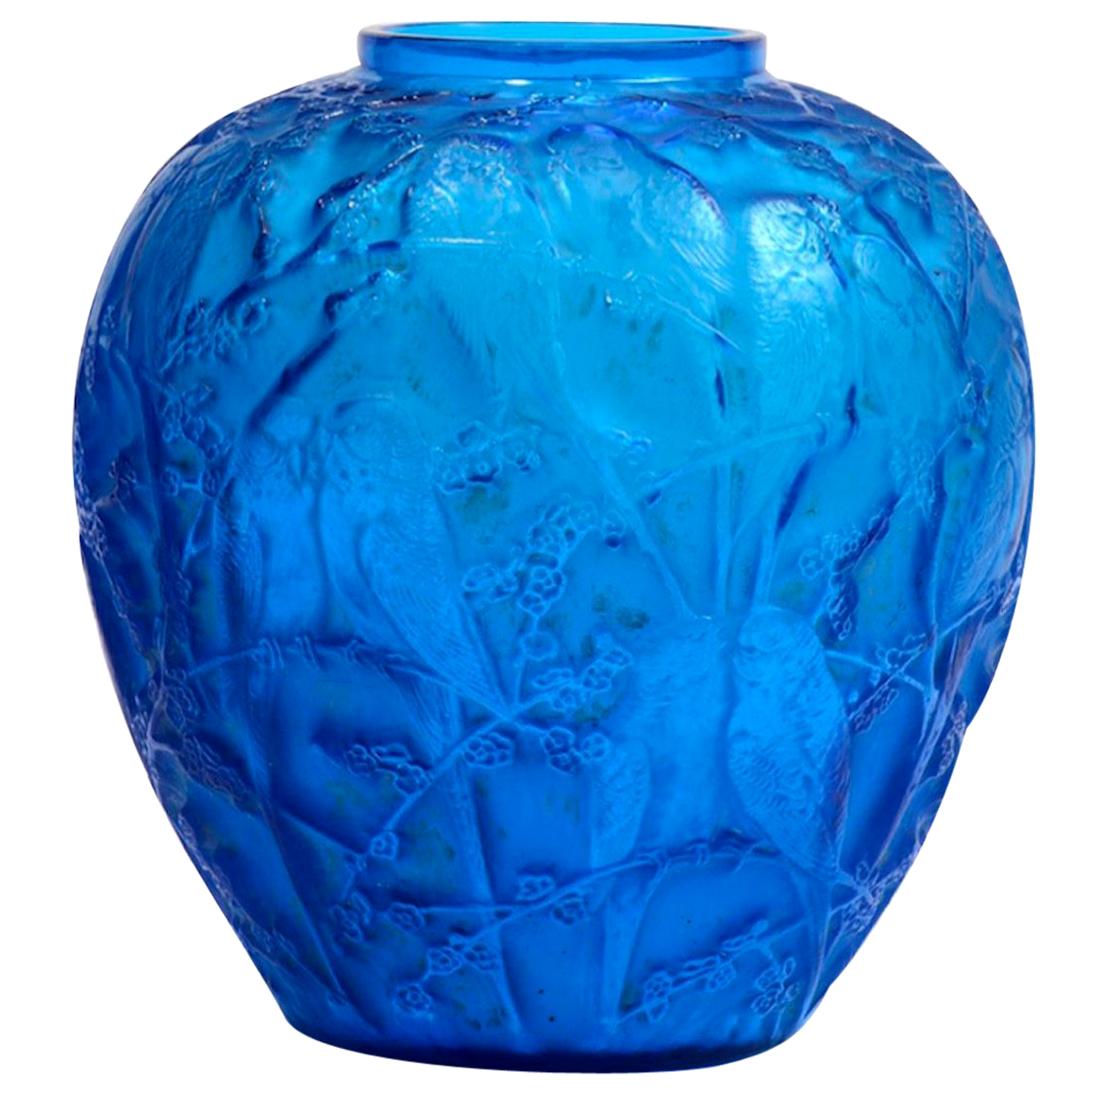 René Lalique Electric Blue Vase "Perruches"